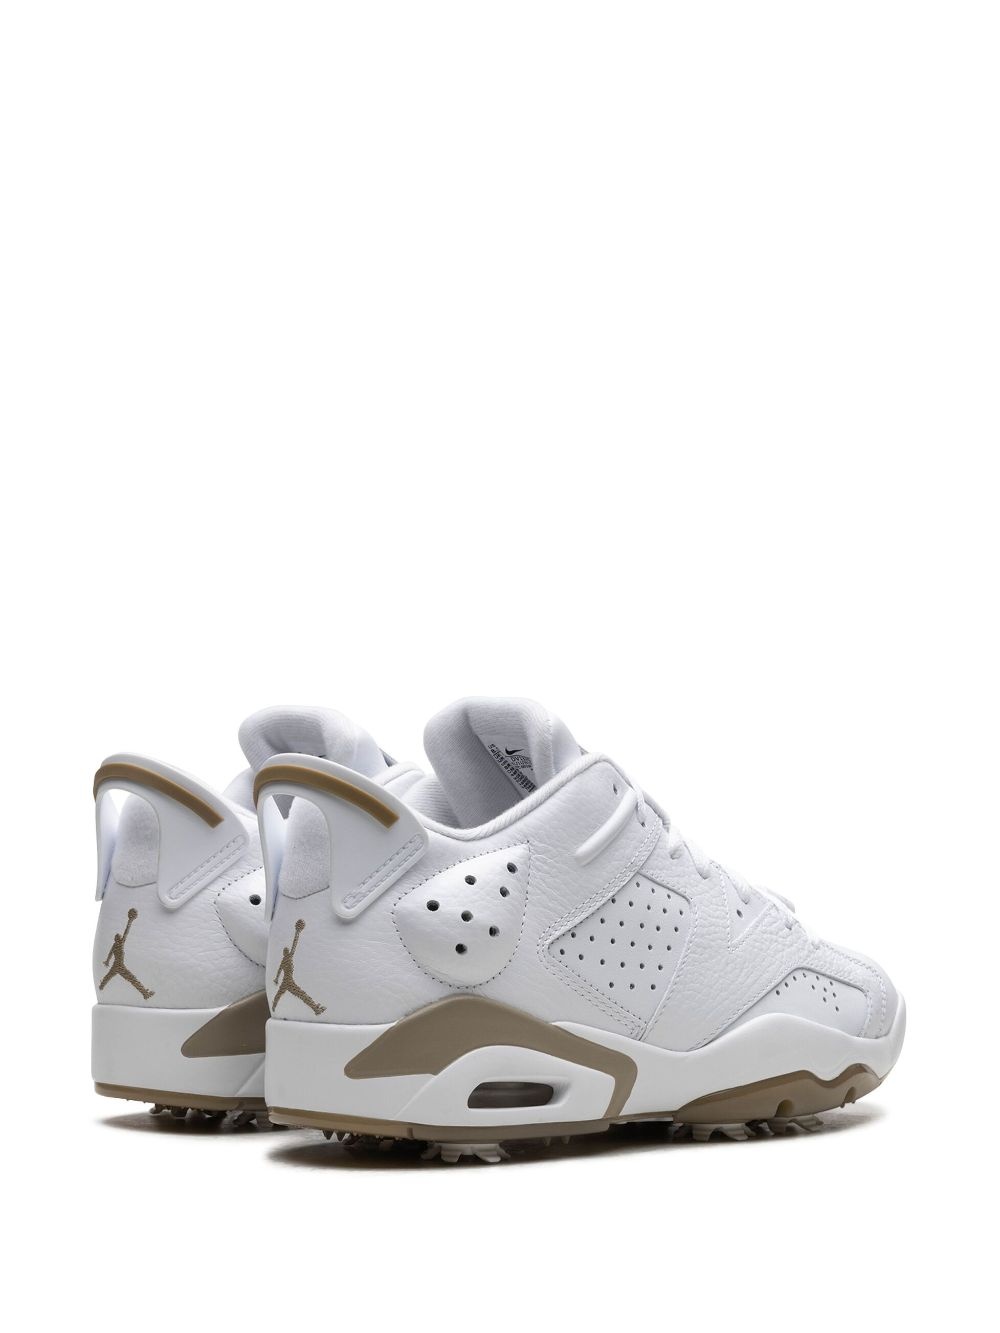 Air Jordan 6 Low Golf "White/Khaki" sneakers - 3